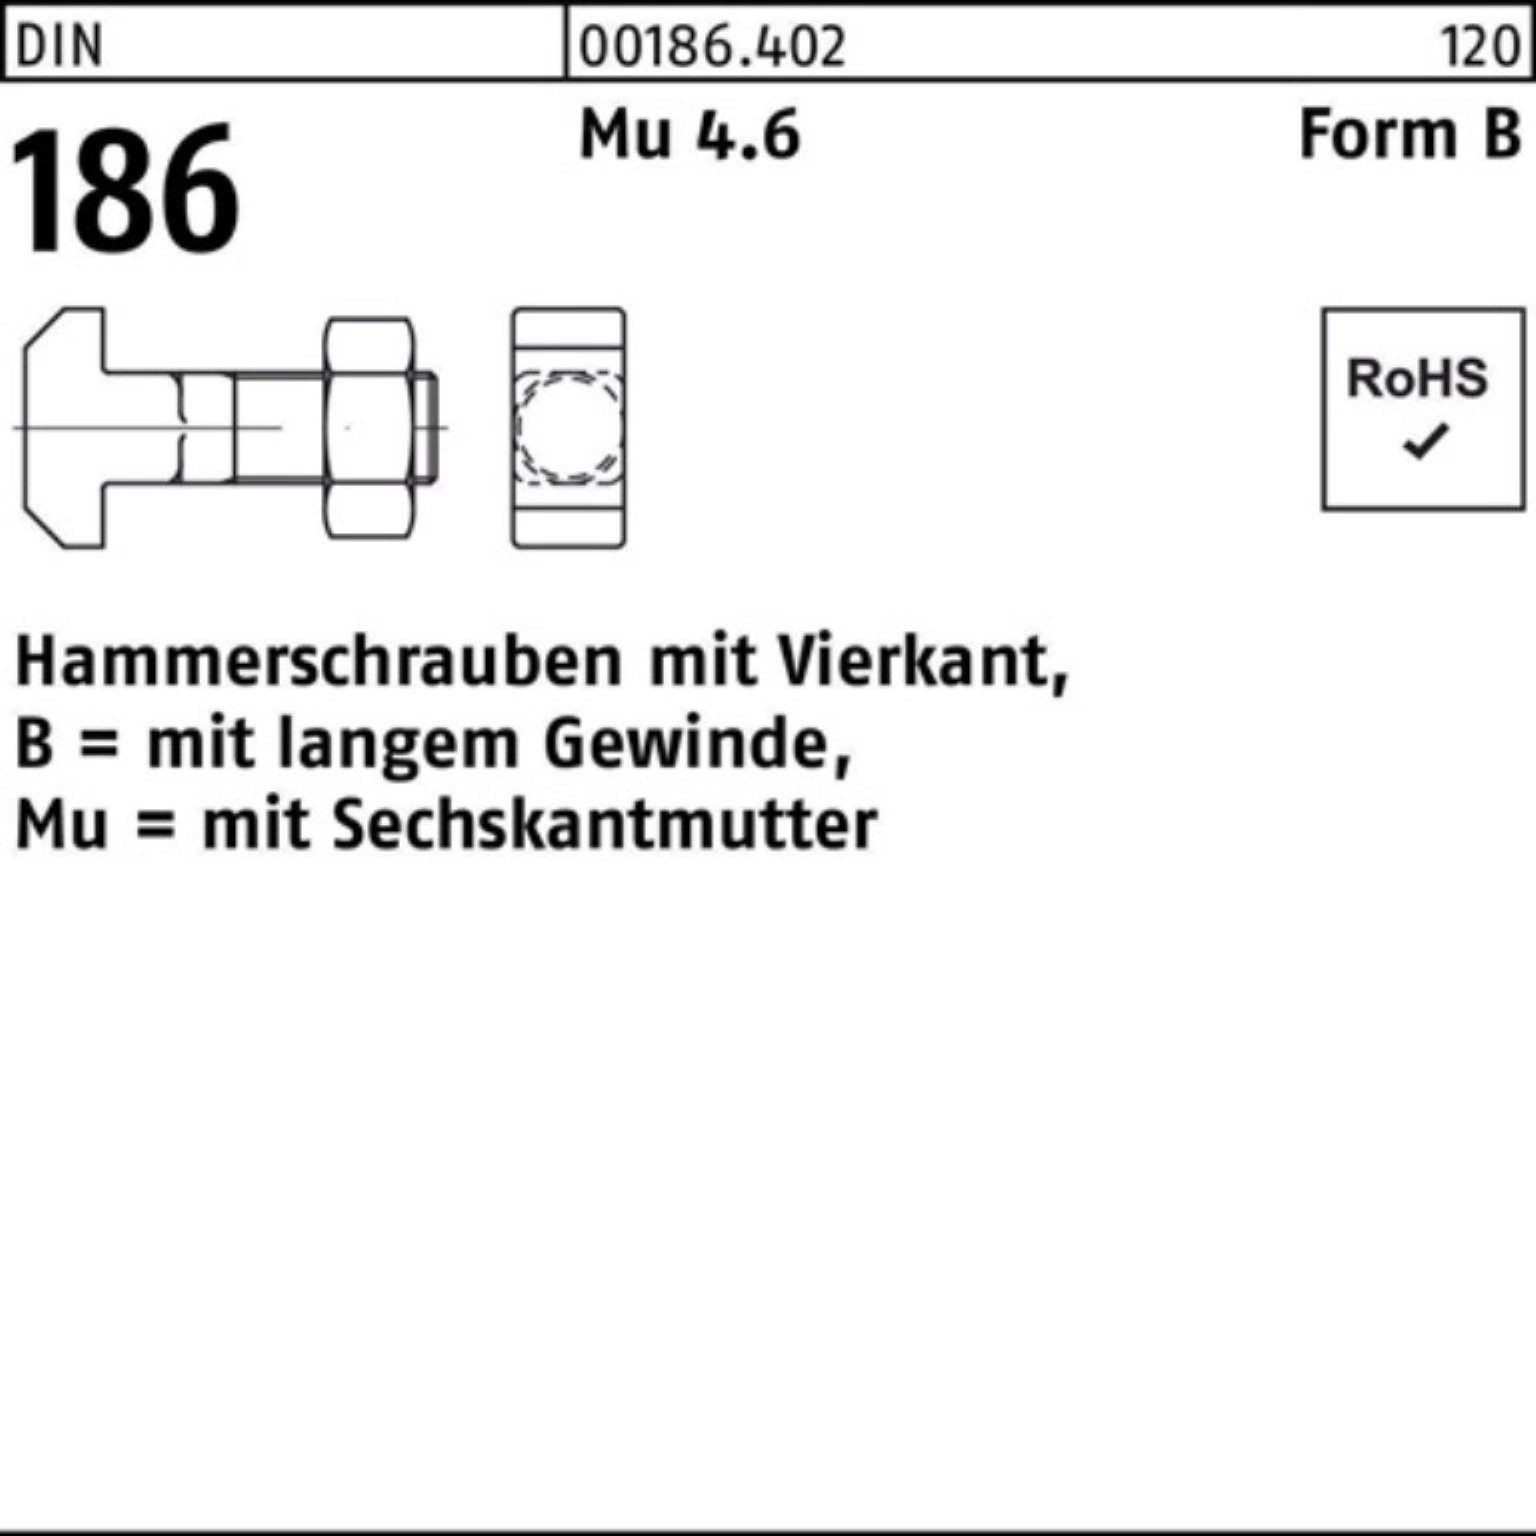 Reyher Schraube 100er Pack Hammerschraube DIN 186 FormB Vierkant 6-ktmutter BM 24x 100